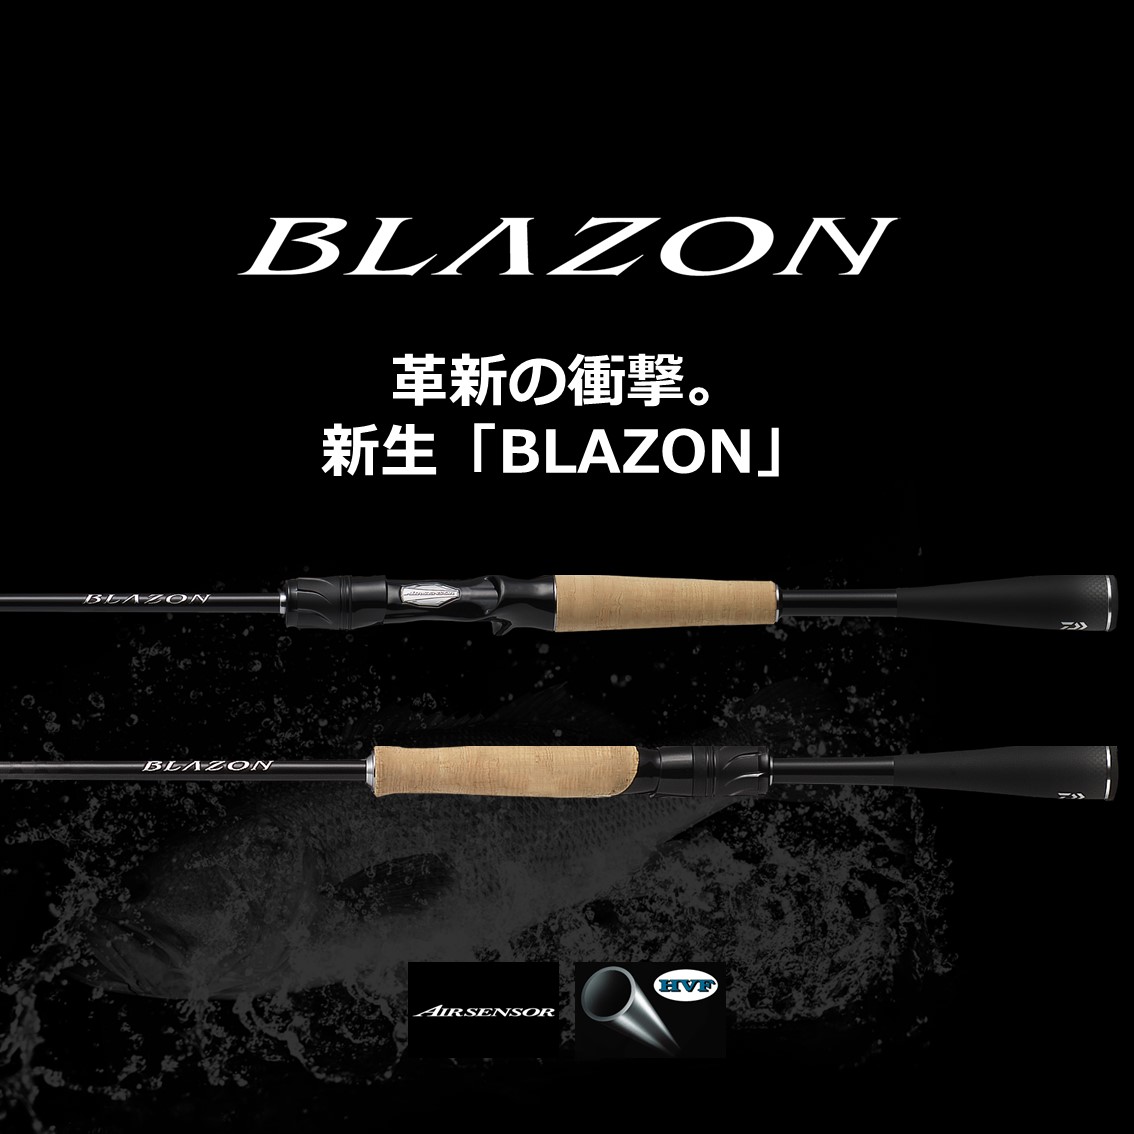 ダイワ(DAIWA) BLAZON(ブレイゾン) S64UL-2 - ロッド、釣り竿